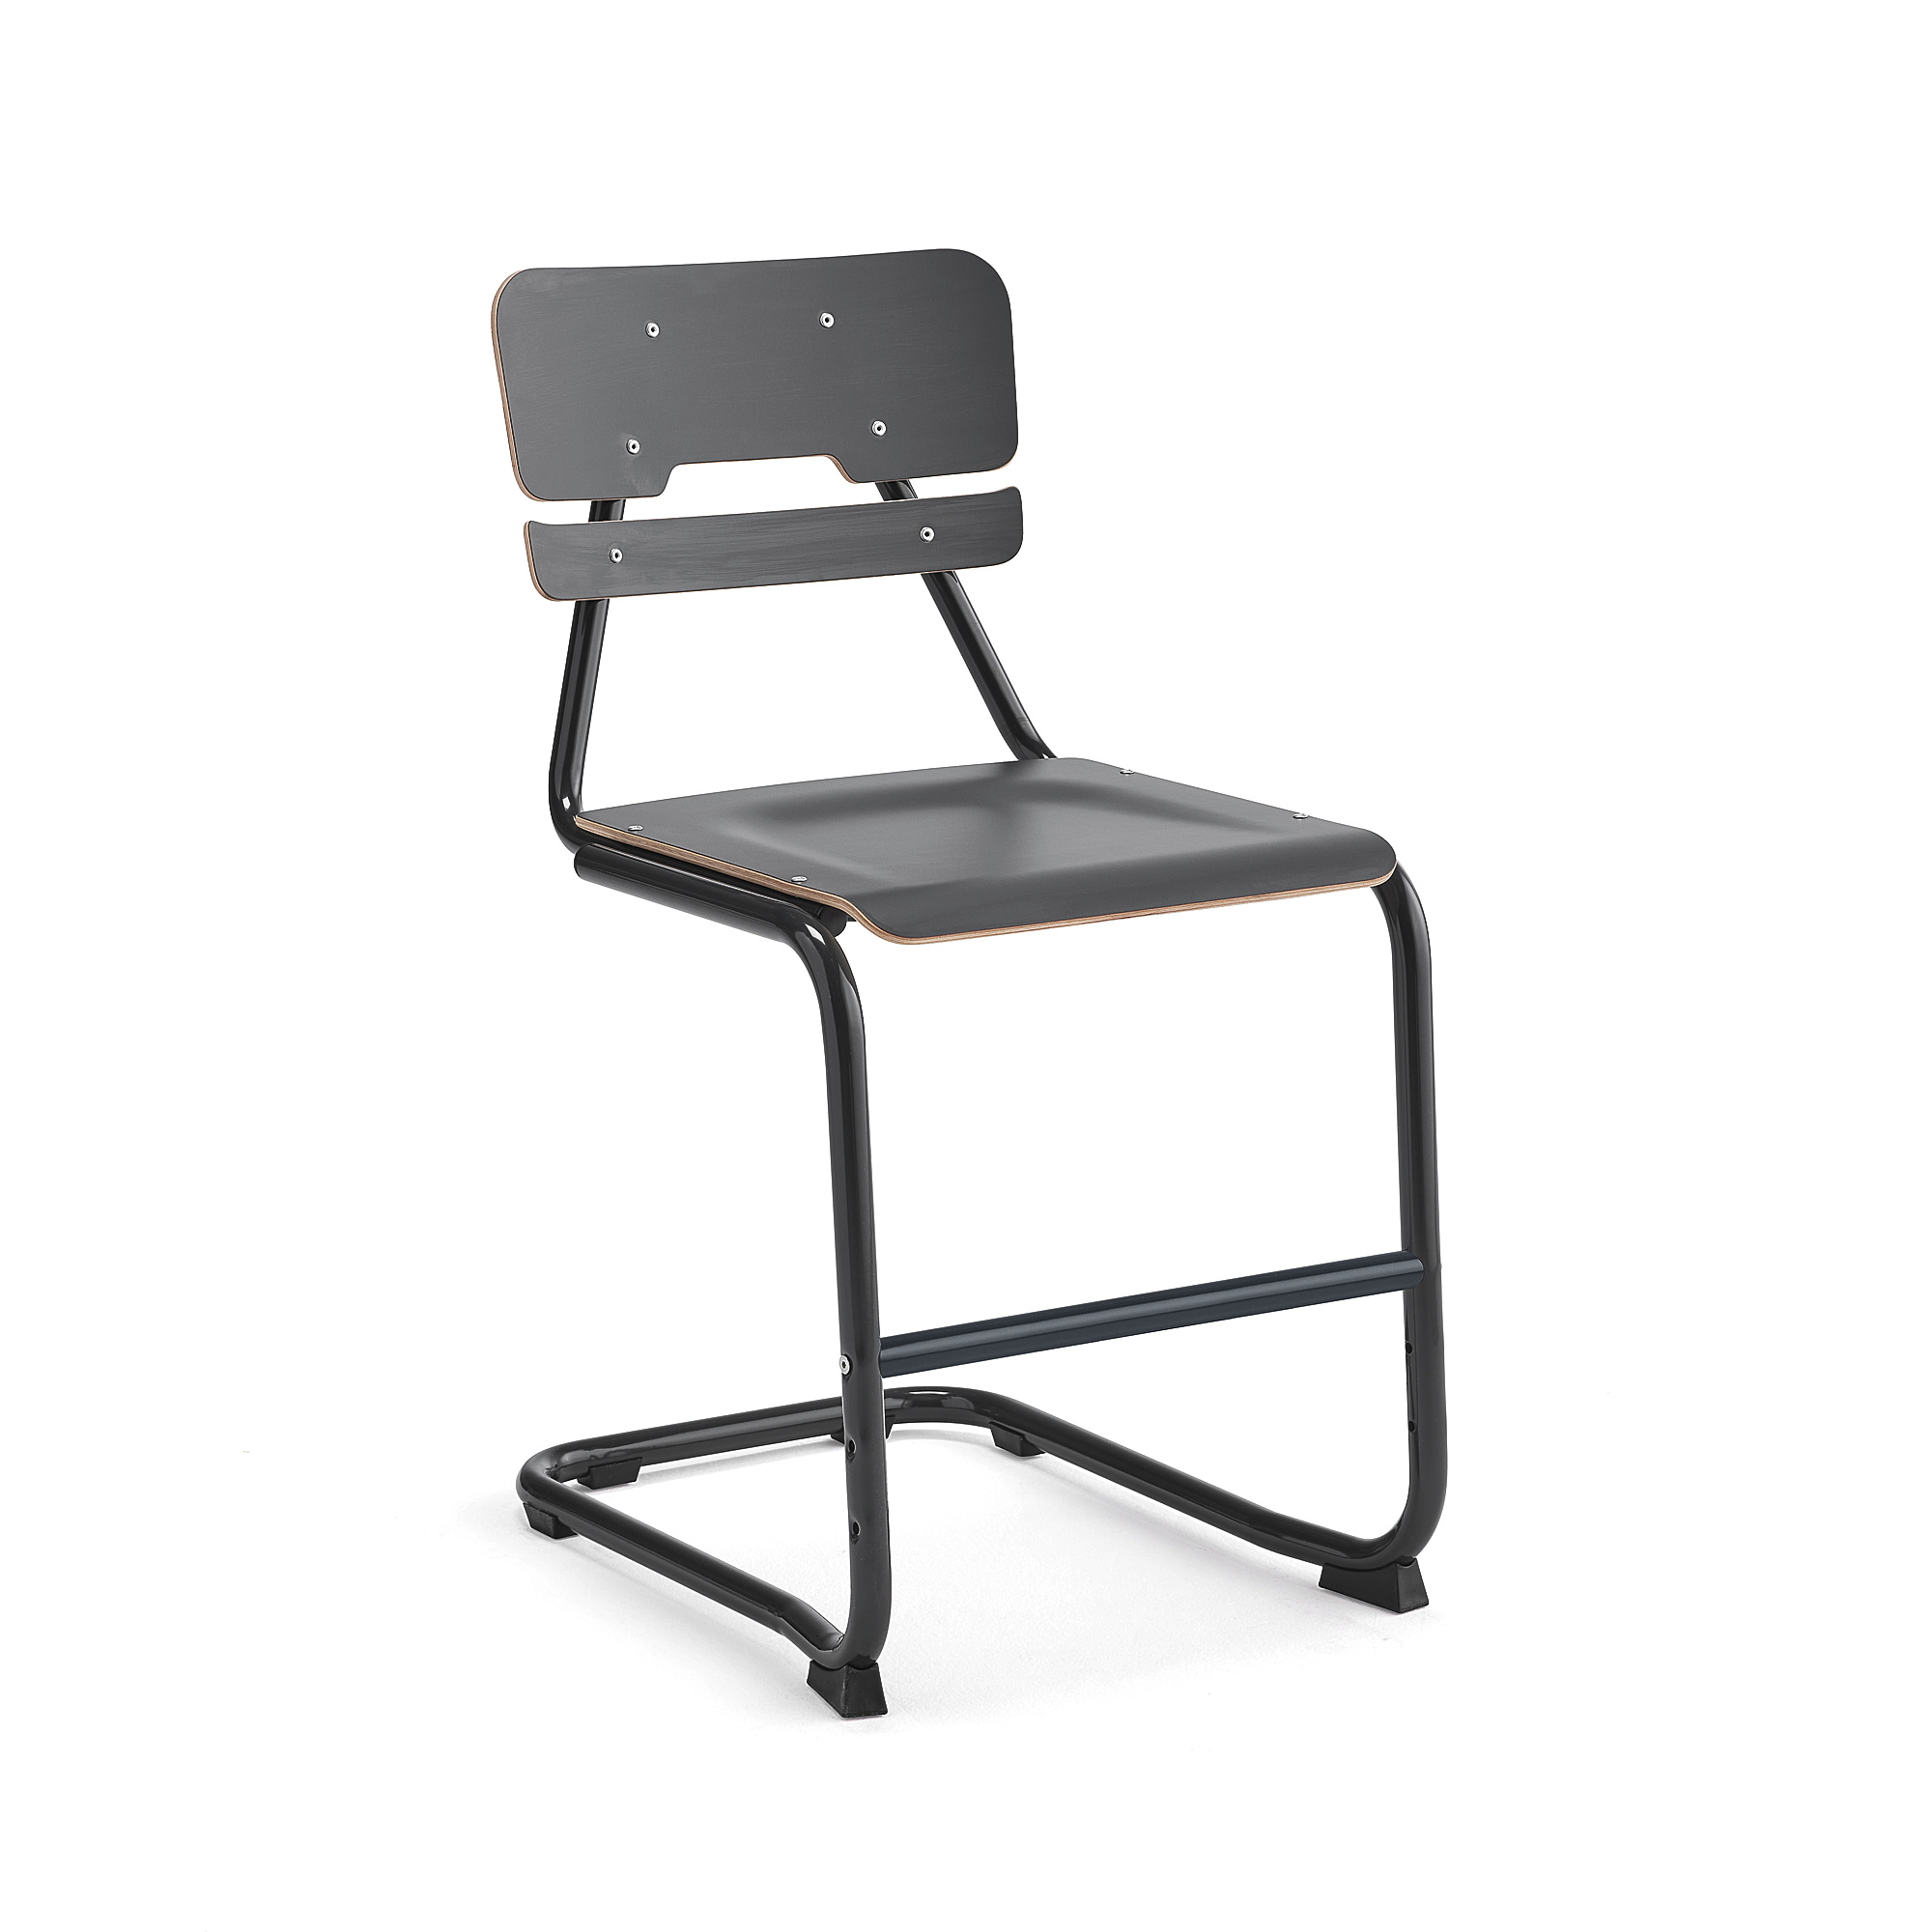 Školní židle LEGERE II, výška 500 mm, antracitově šedá, antracitově šedá